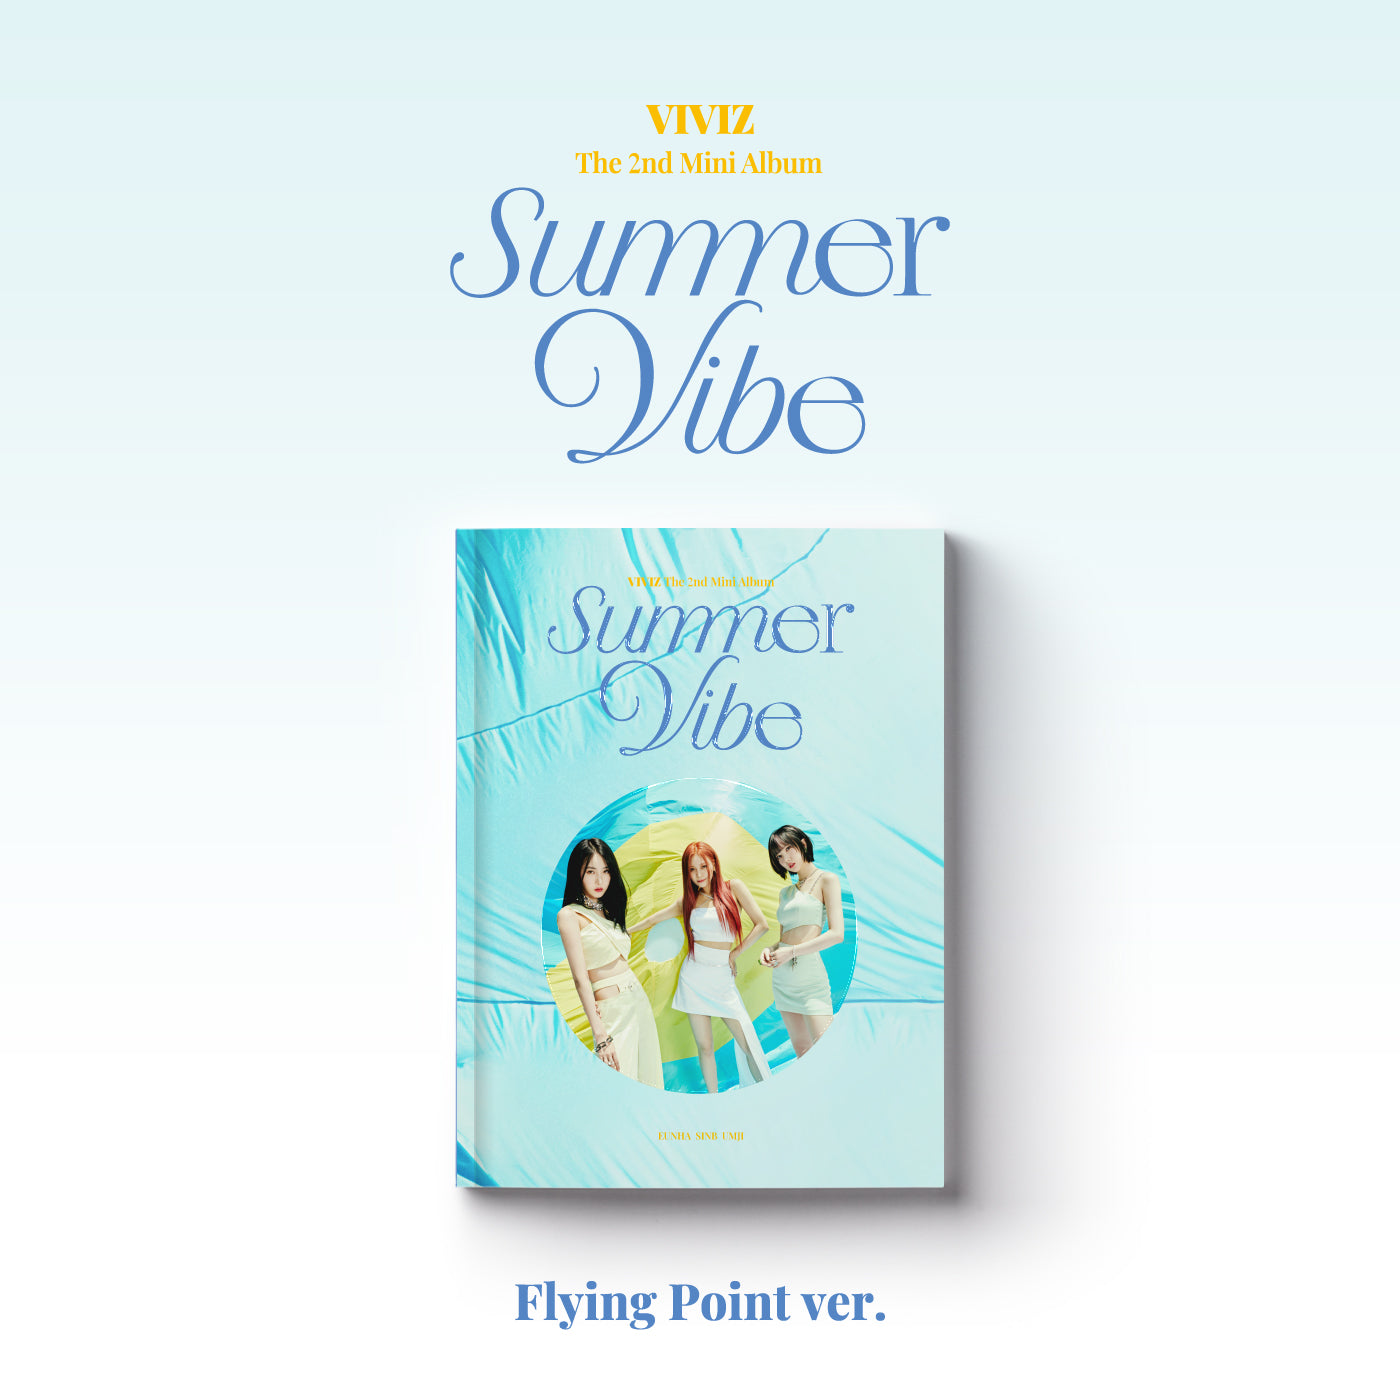 VIVIZ 2ND MINI ALBUM 'SUMMER VIBE' (PHOTOBOOK) FLYING POINT VERSION COVER